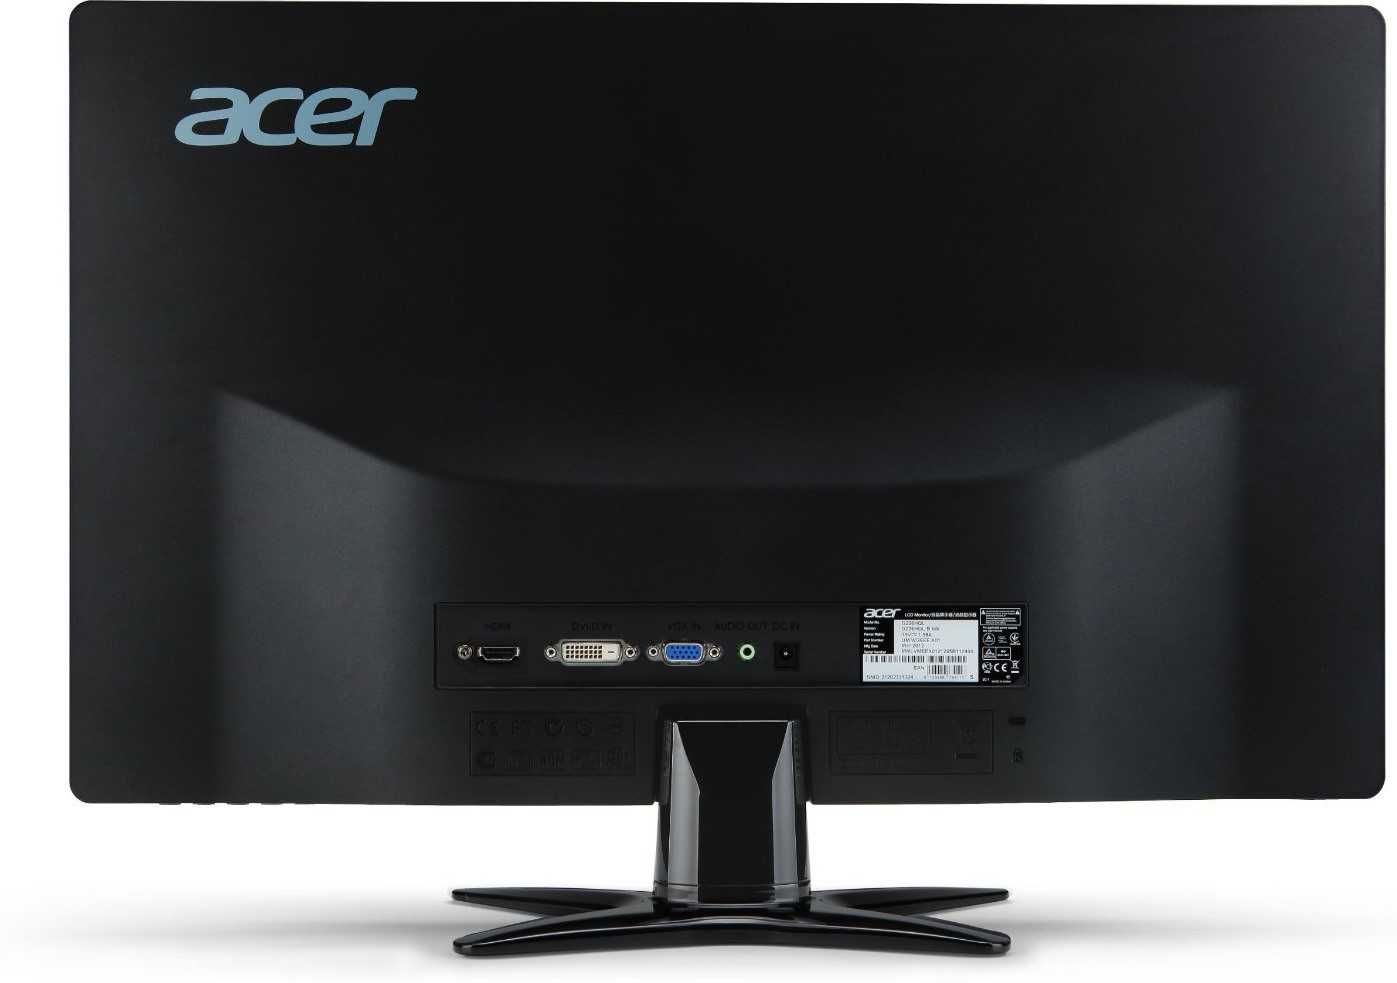 Монитор acer g226hqlhbd (черный) купить от 6990 руб в краснодаре, сравнить цены, отзывы, видео обзоры и характеристики